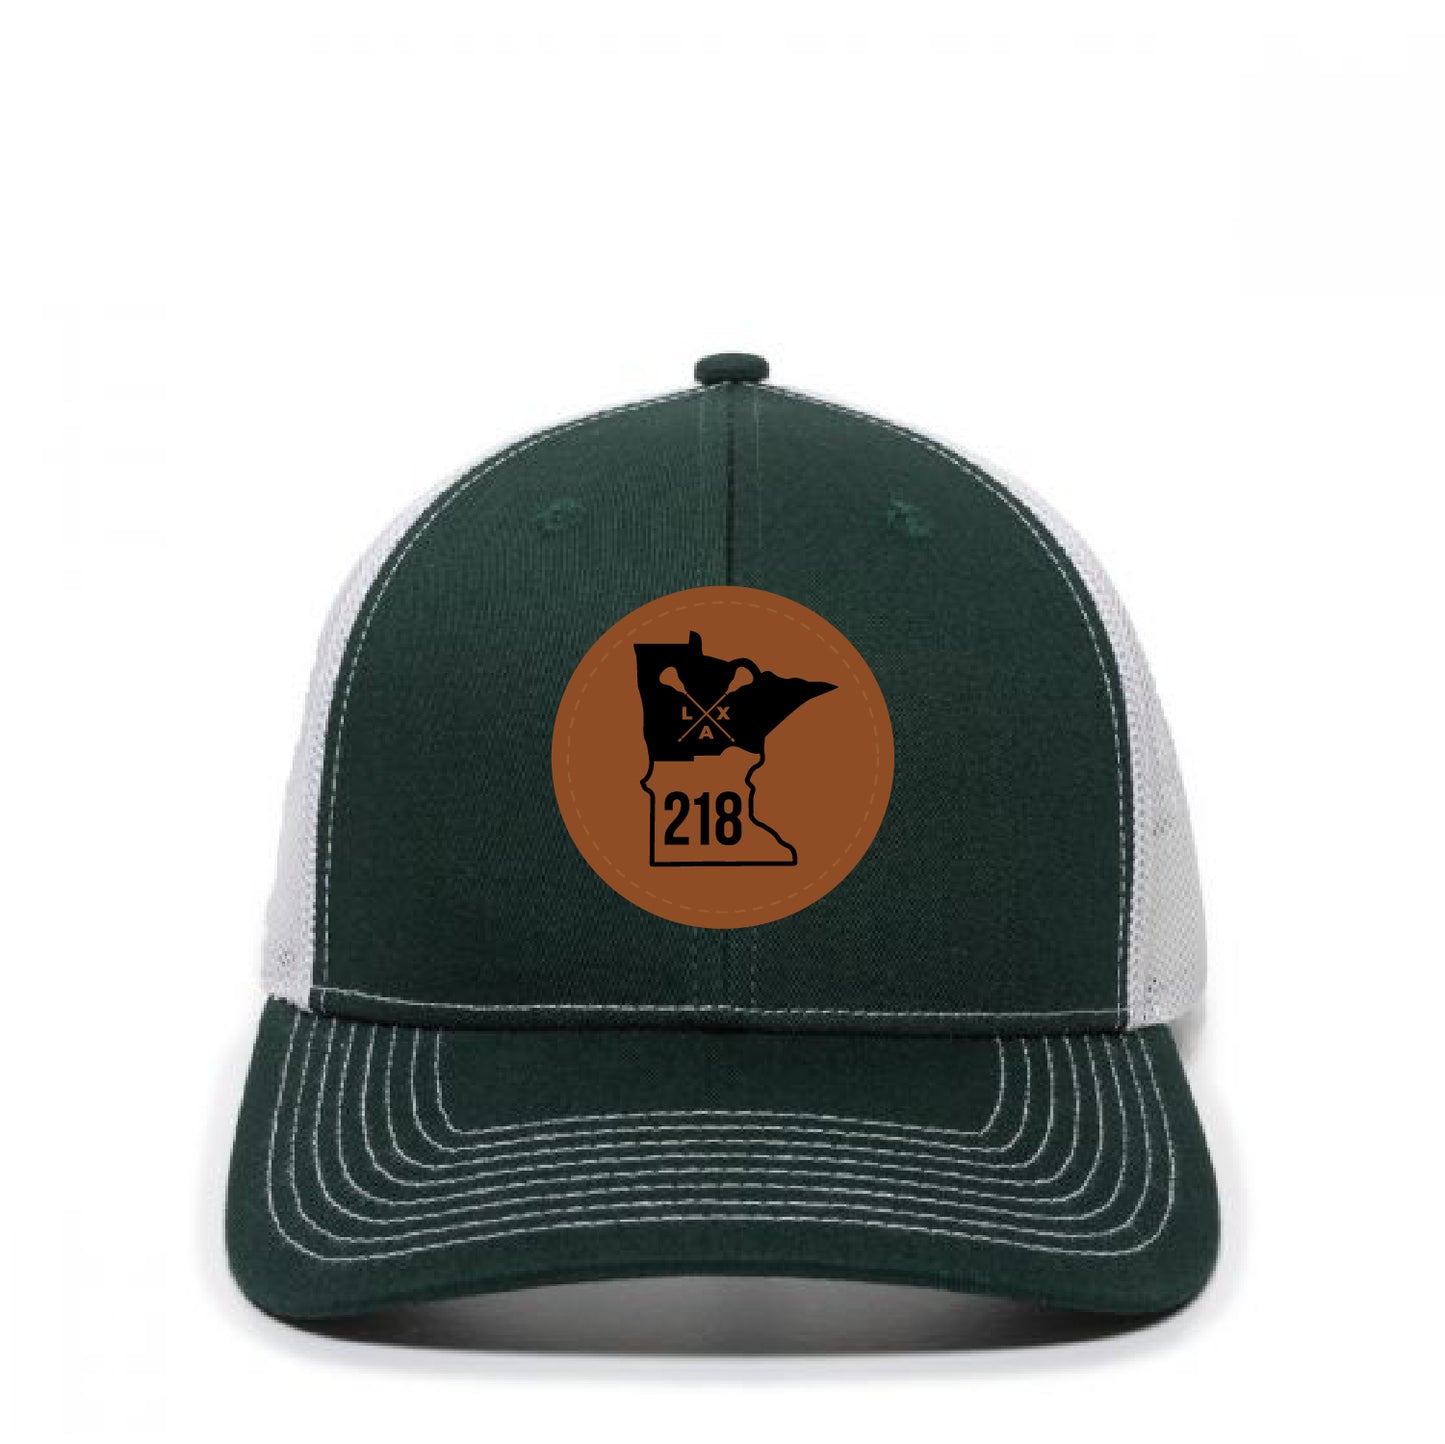 218 Lax Trucker Hat